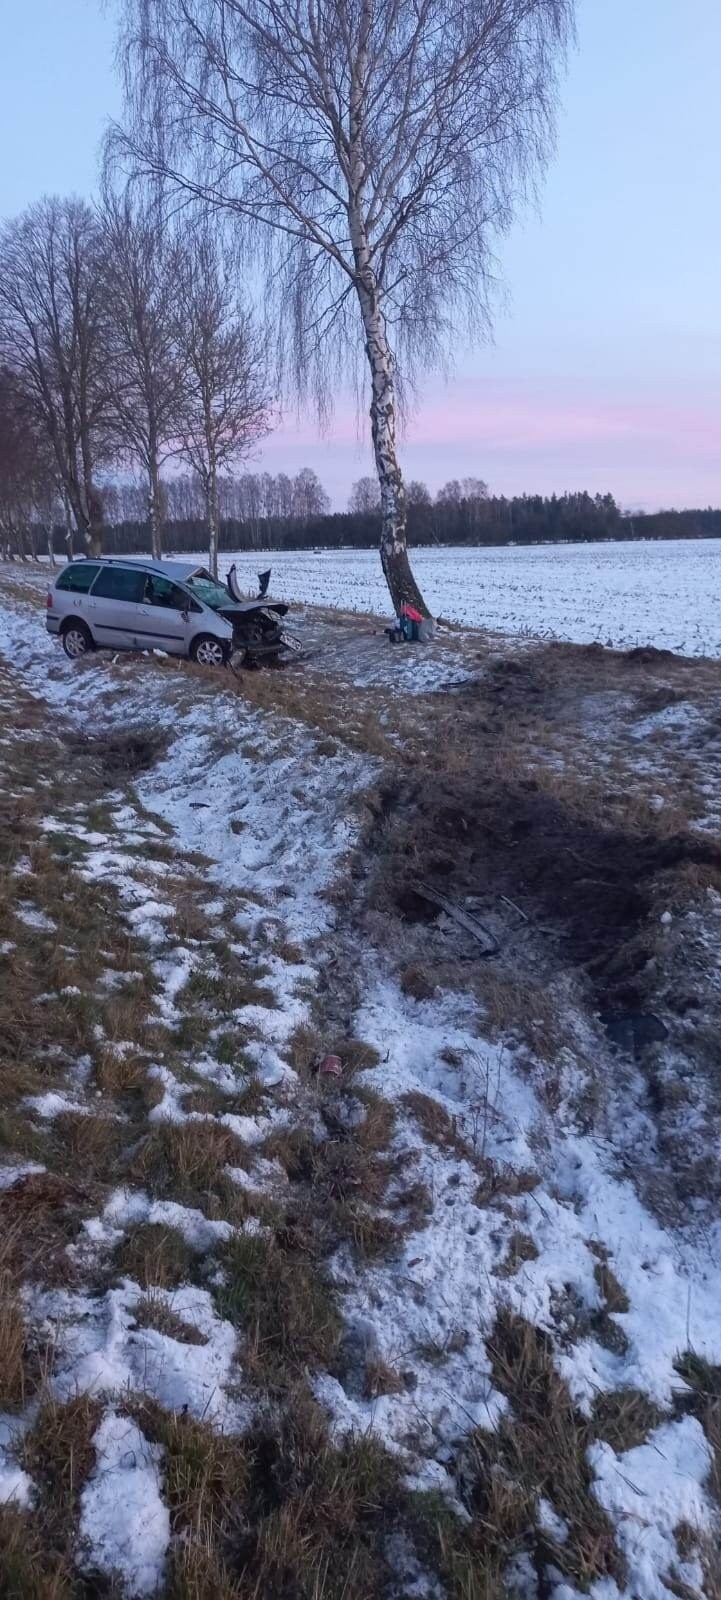 Wypadek samochodu osobowego koło miejscowości Przydagriń